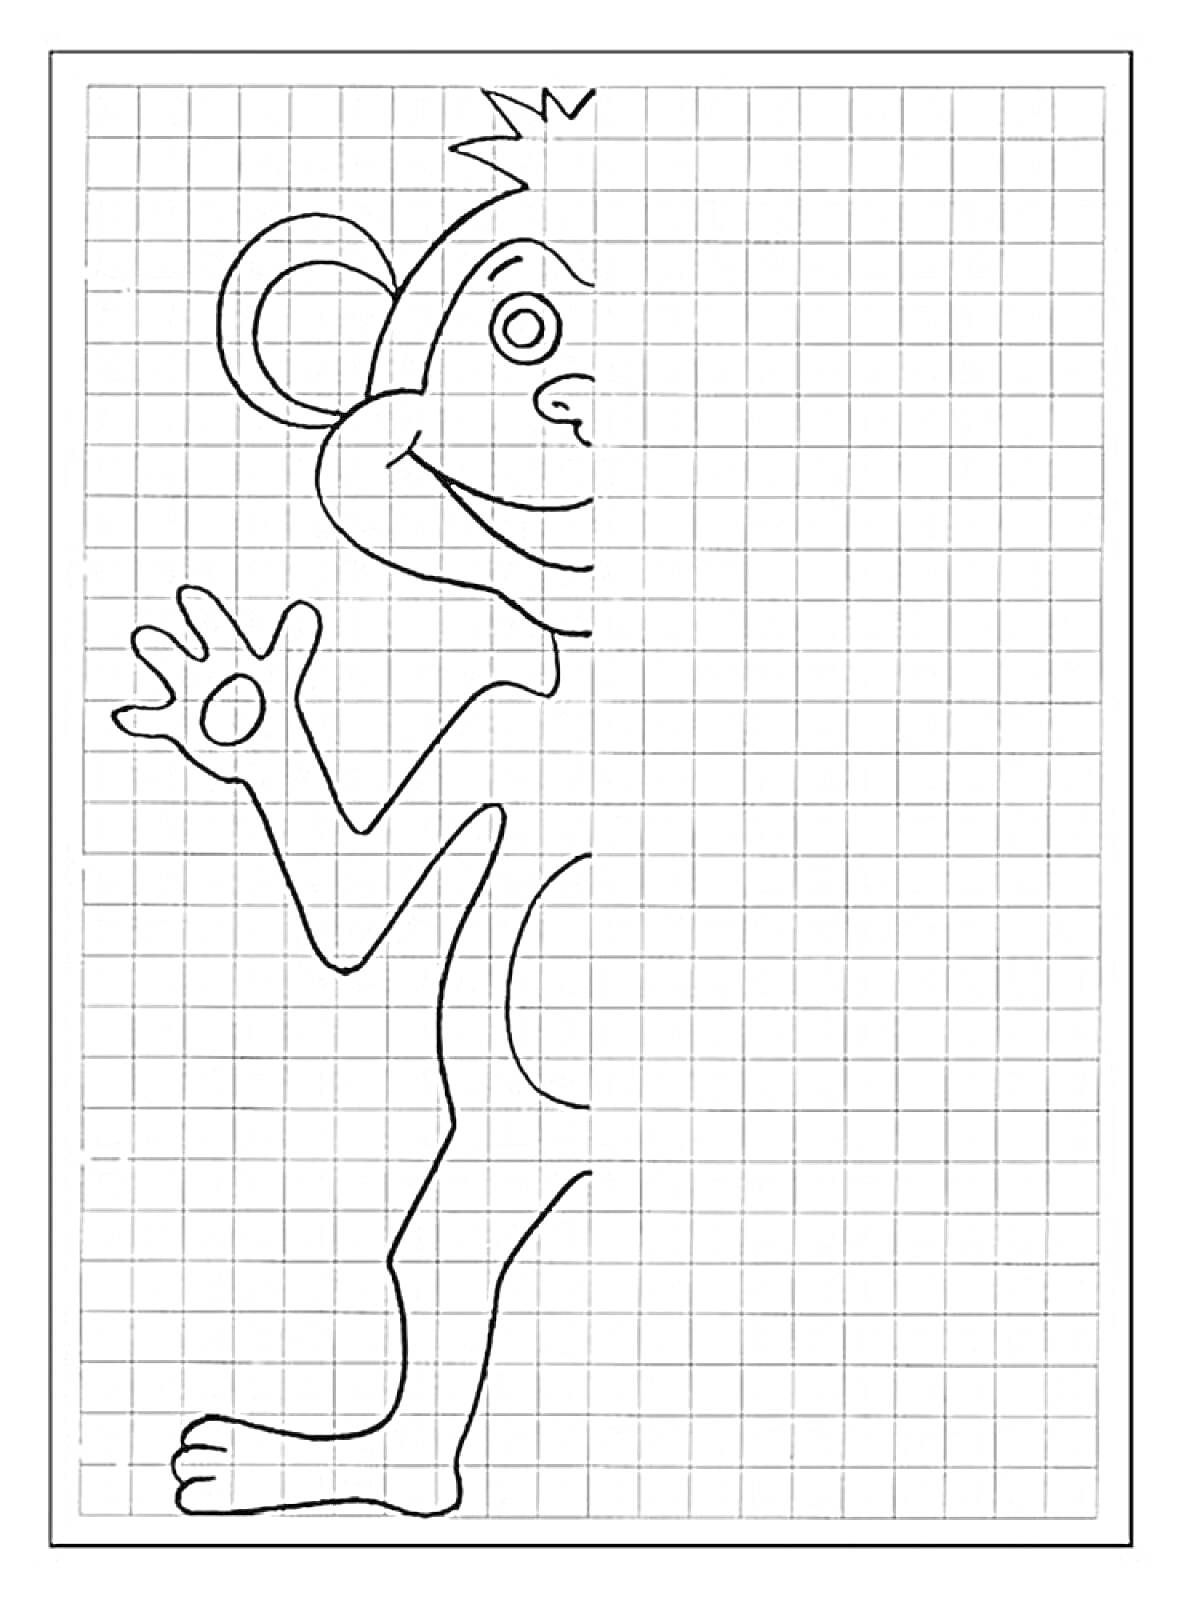 Раскраска Раскраска по клеточкам с изображением частично нарисованной обезьянки